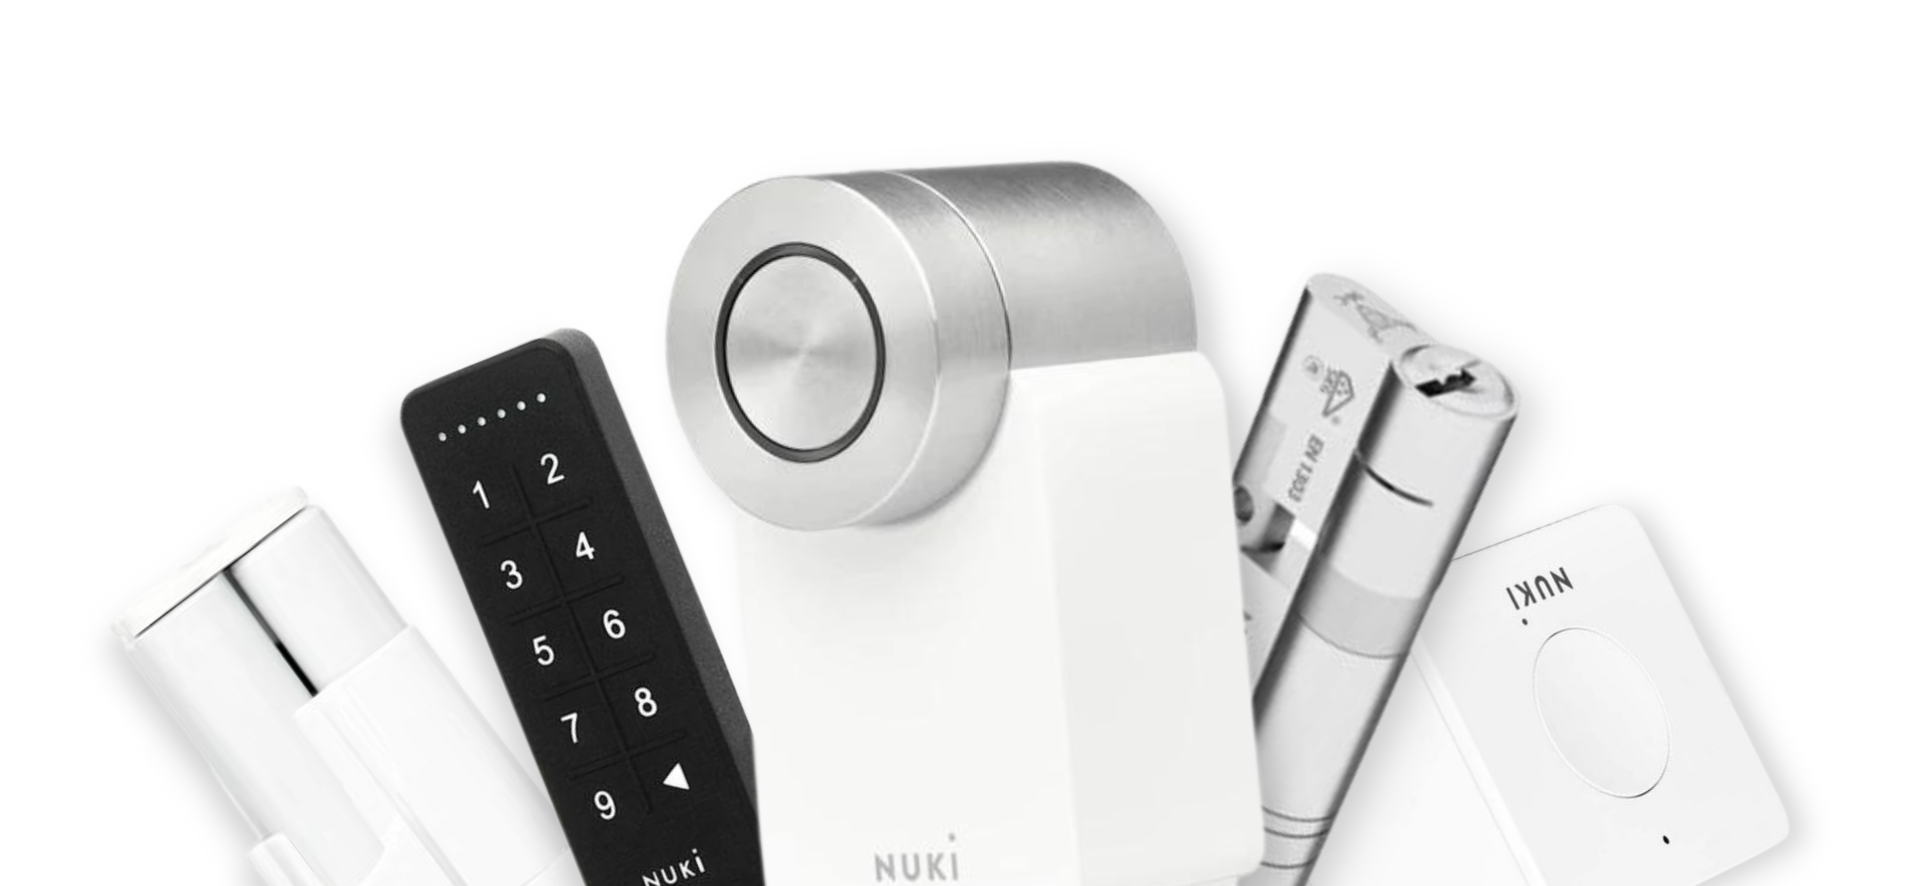 Nuki Smart Lock 4.0 BT/Materia/Rosca - Cerradura Inteligente Digital